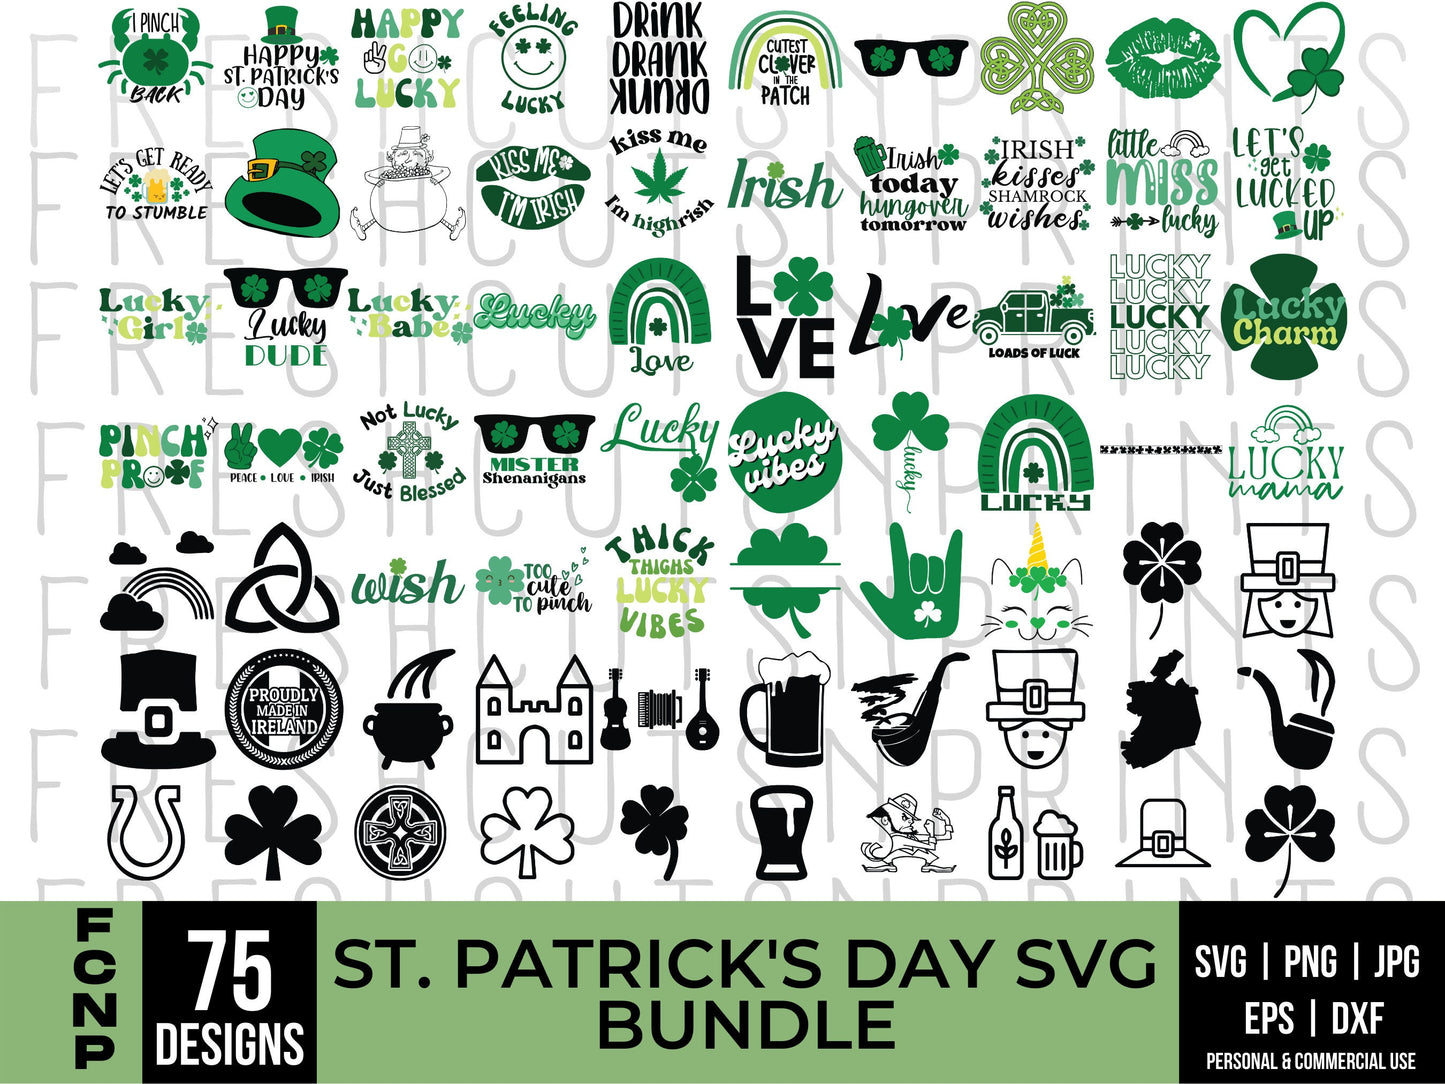 75 St Patricks Day SVG Bundle, Shamrock svg, Lucky svg, Irish svg, Clover svg, St. Patrick's Day Quotes, Silhouette, Svg files for Cricut